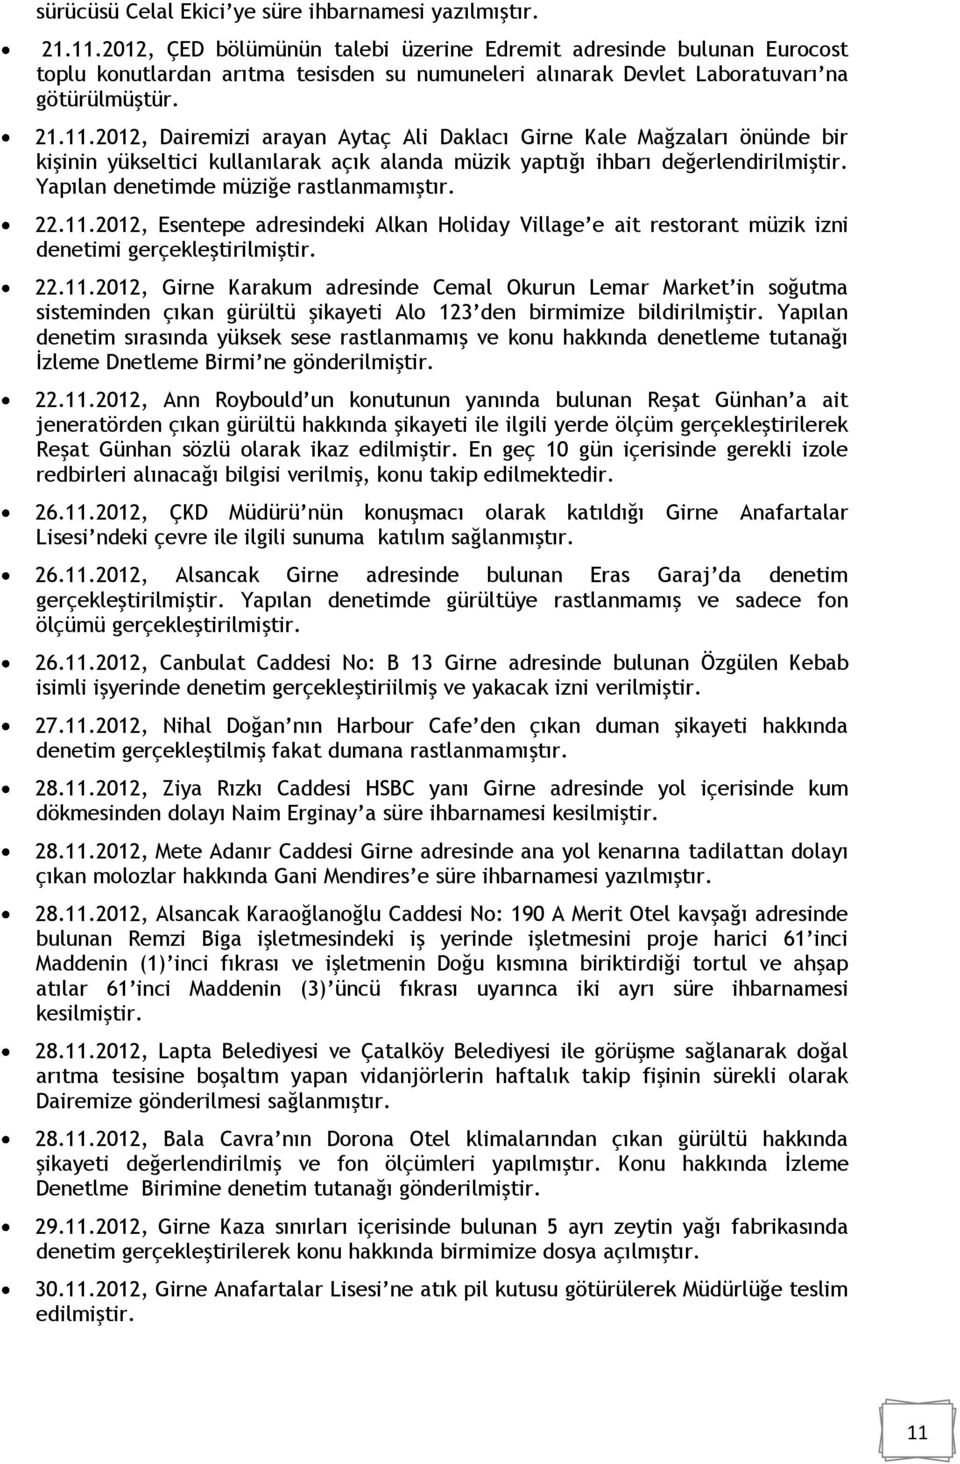 2012, Dairemizi arayan Aytaç Ali Daklacı Girne Kale Mağzaları önünde bir kişinin yükseltici kullanılarak açık alanda müzik yaptığı ihbarı değerlendirilmiştir. Yapılan denetimde müziğe rastlanmamıştır.